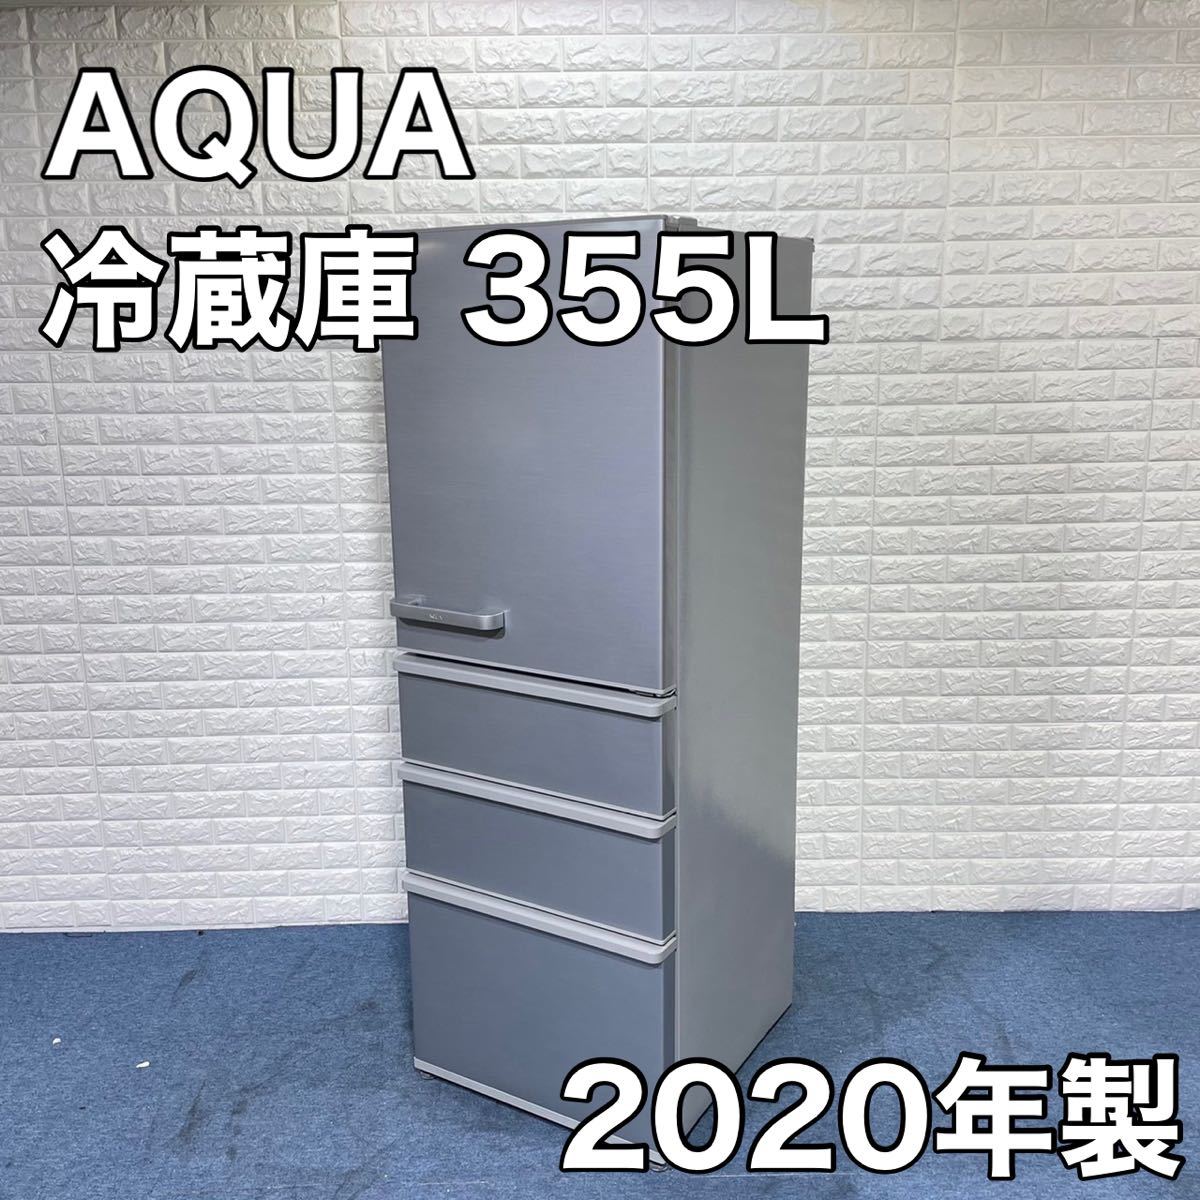 27795円 日本正規代理店品 AQUA アクア 冷蔵庫 AQR-36J 355L 2020年製 家電 4ドア